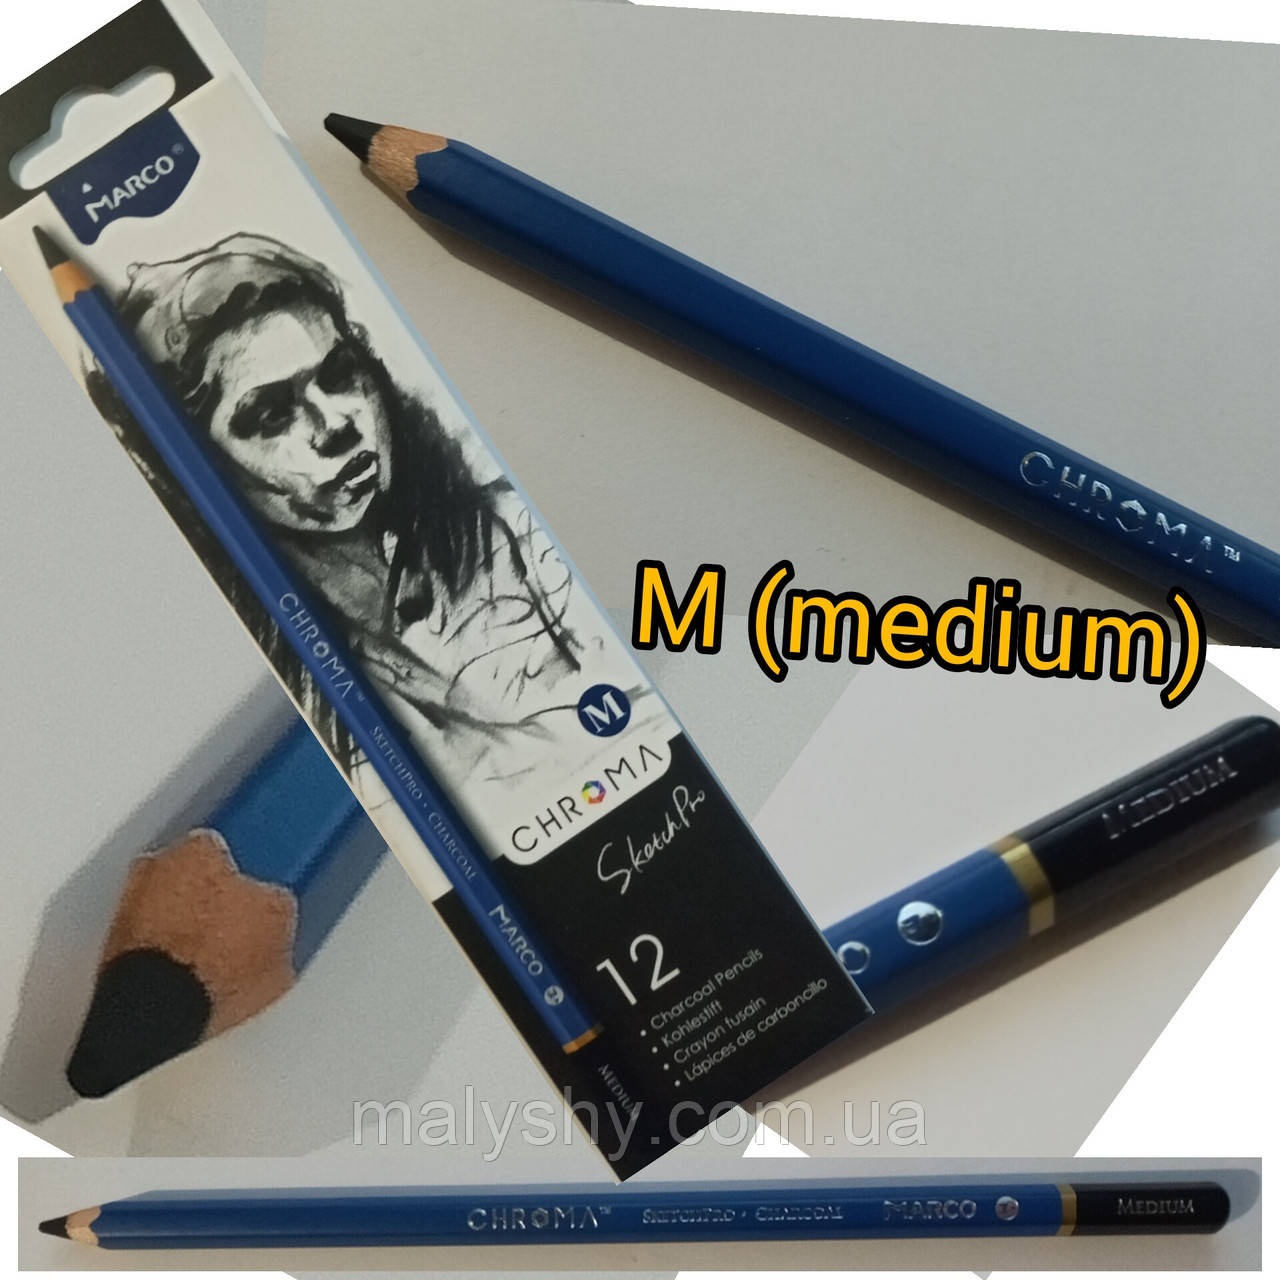 Вугільний олівець шестикутній чорний Charcoal "SketchPro" Marco Chroma / 1040M -medium / марко / 1шт